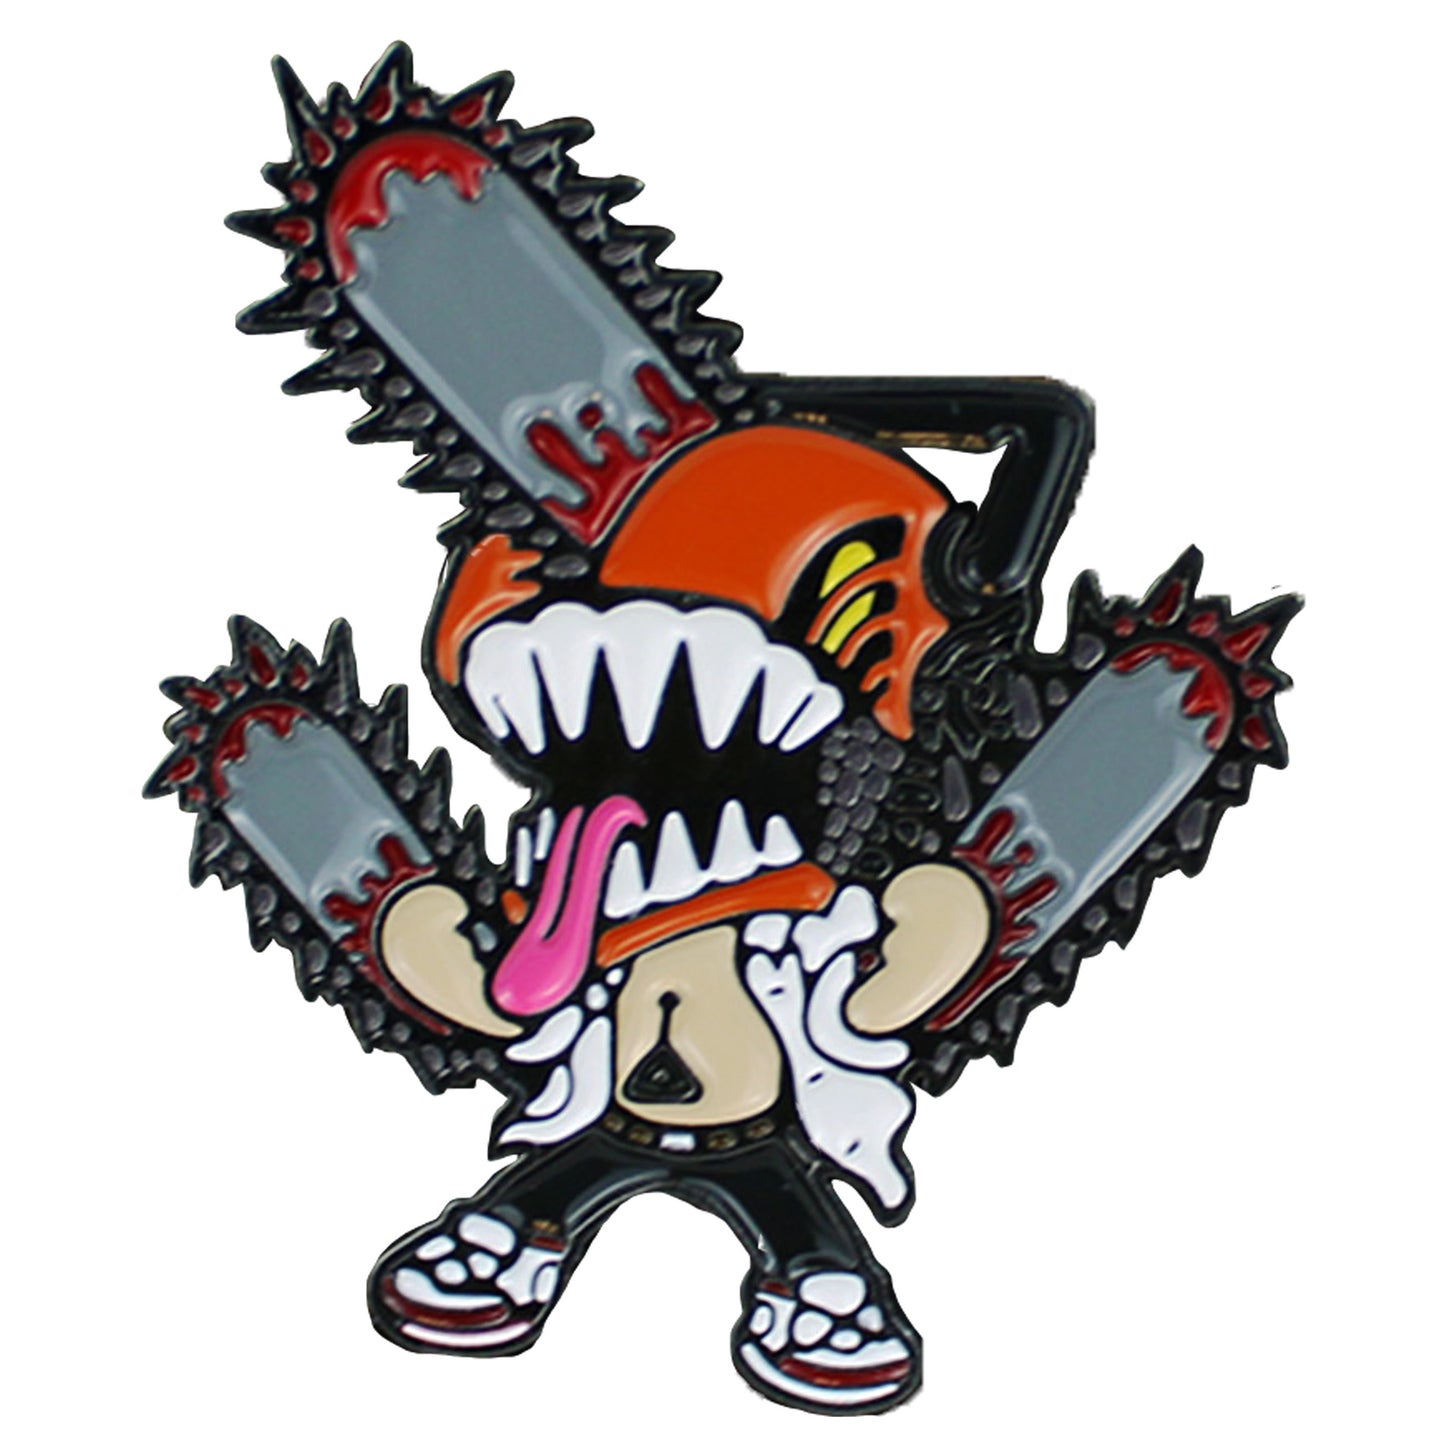 Chainsaw Devil Chibi Chainsaw Man Enamel Pin